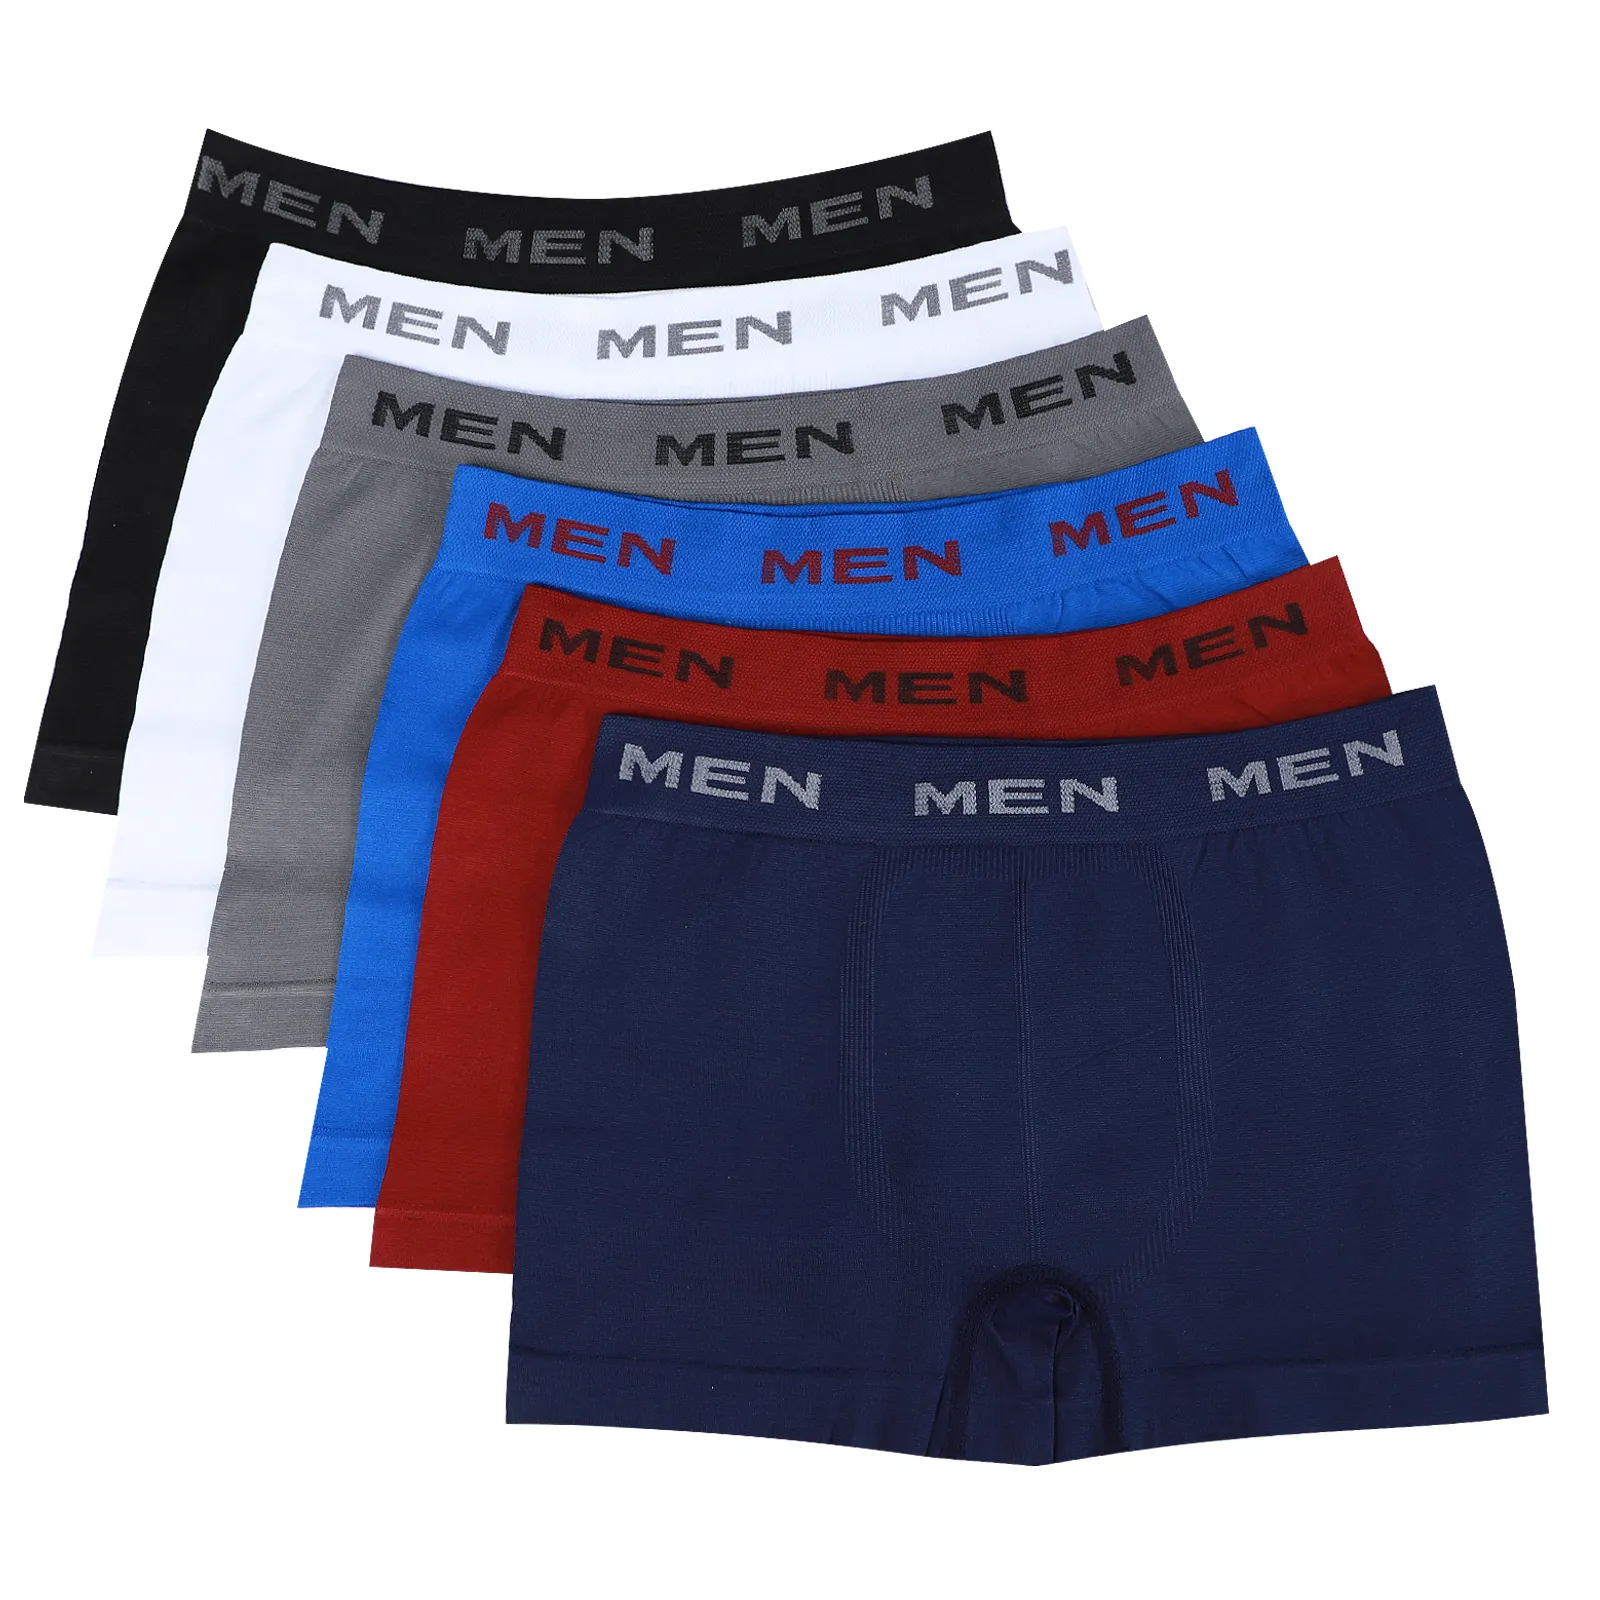 Mid Rise nahtlose Herren Unterwäsche Boxershorts weiß schwarz einfarbig Polyester Unterhose für erwachsene Mann Bulk Stock MEN A0246